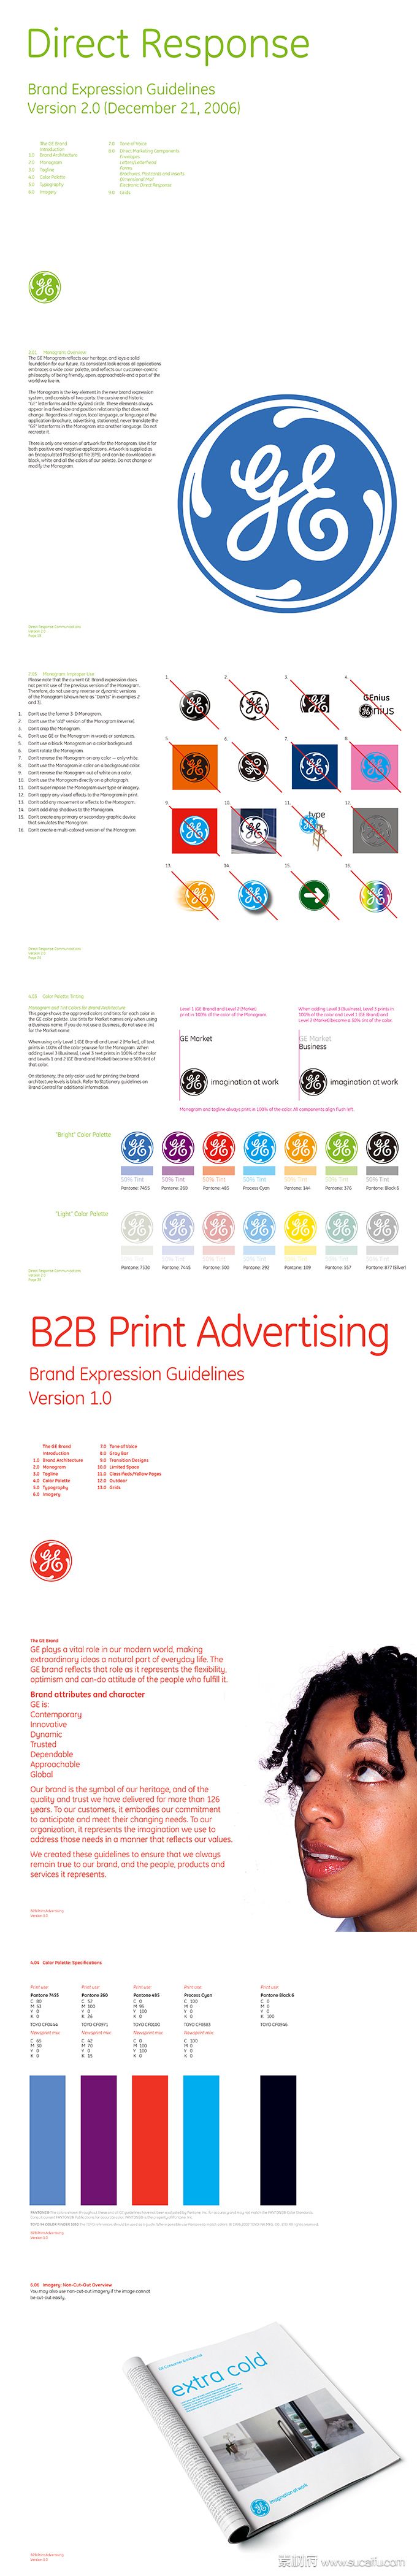 通用集团直复营销和B2B印刷广告品牌规范手册